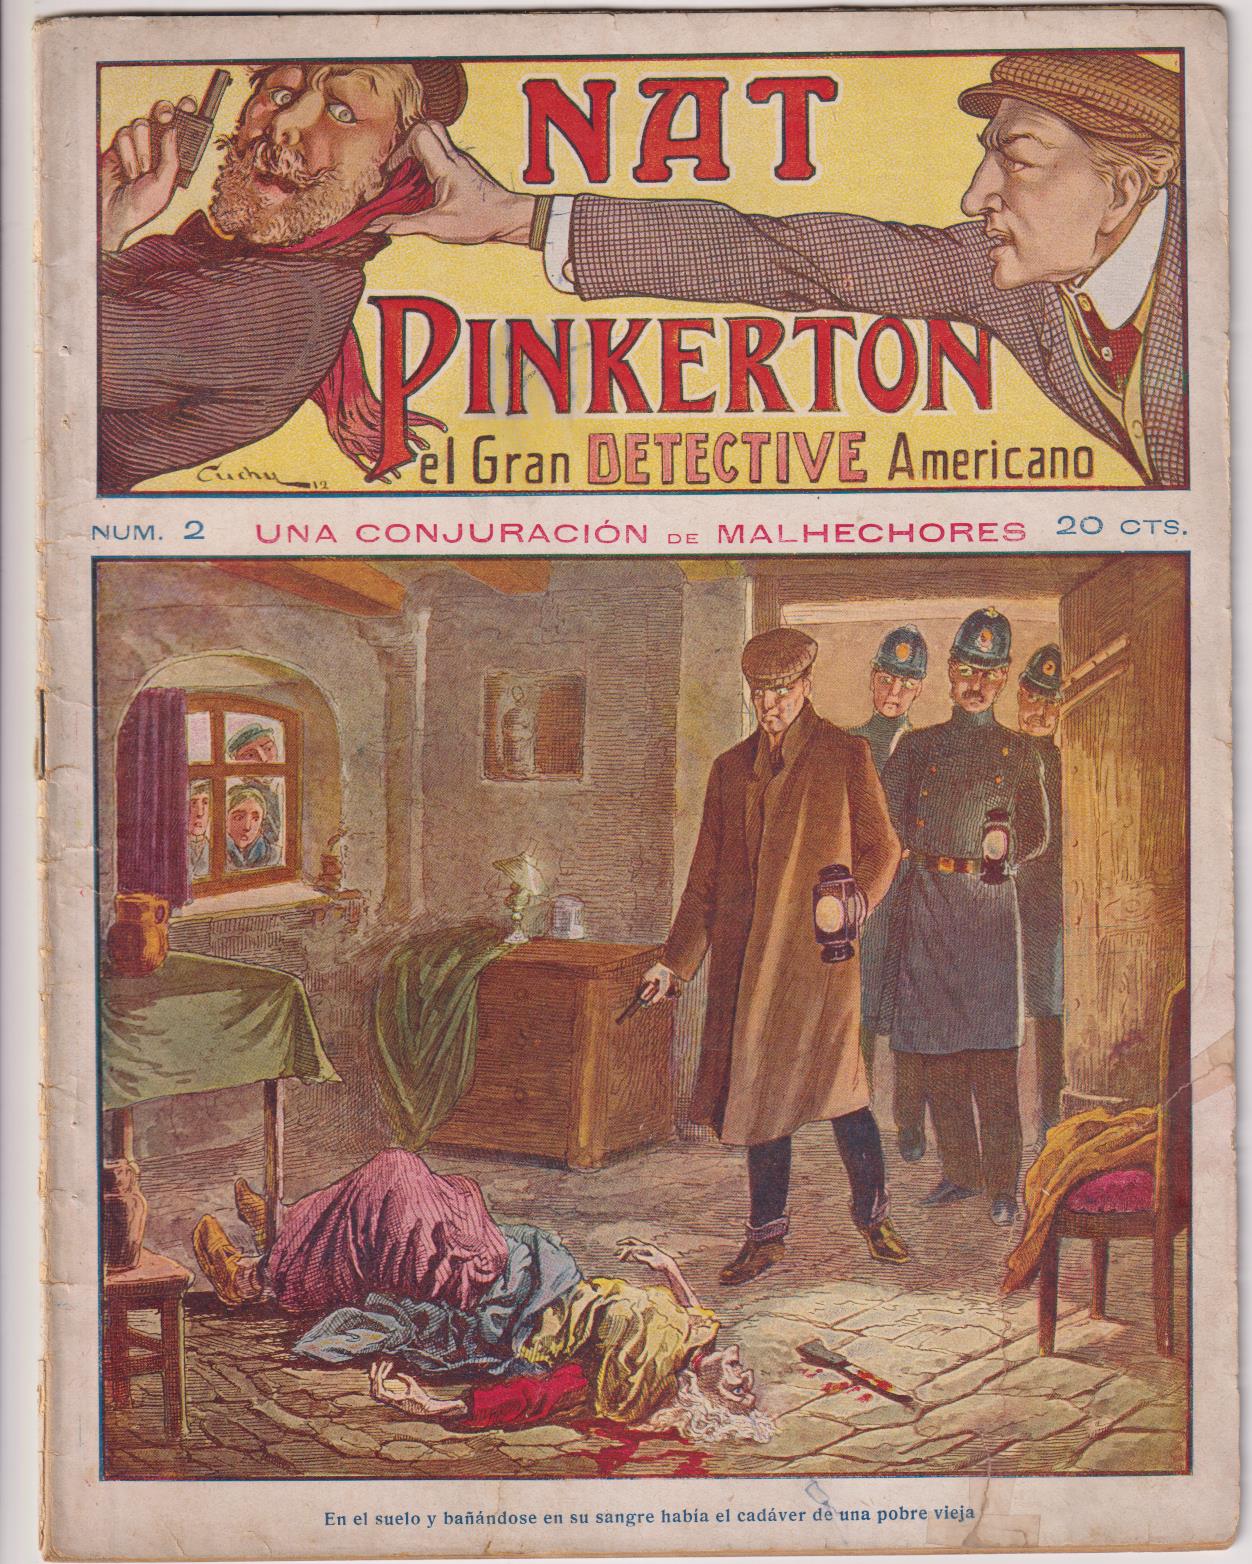 Nat Pinkerton. El Gran detective Americano nº 2. Seguí. (26x21) 31 p.p. con imágenes